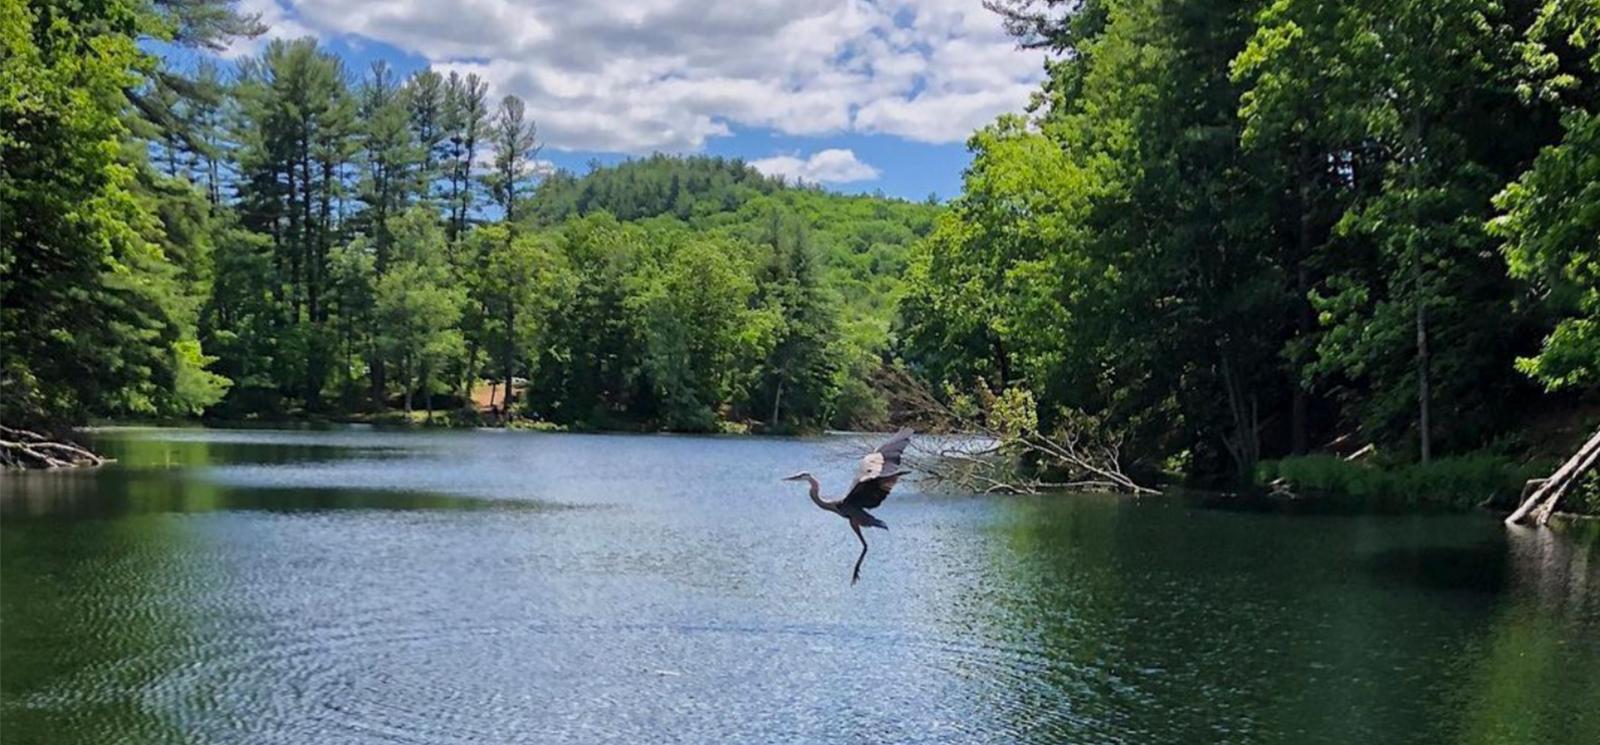 Egret bird taking flight over water at Black Rock State Park (Instagram@vlawwtravels)